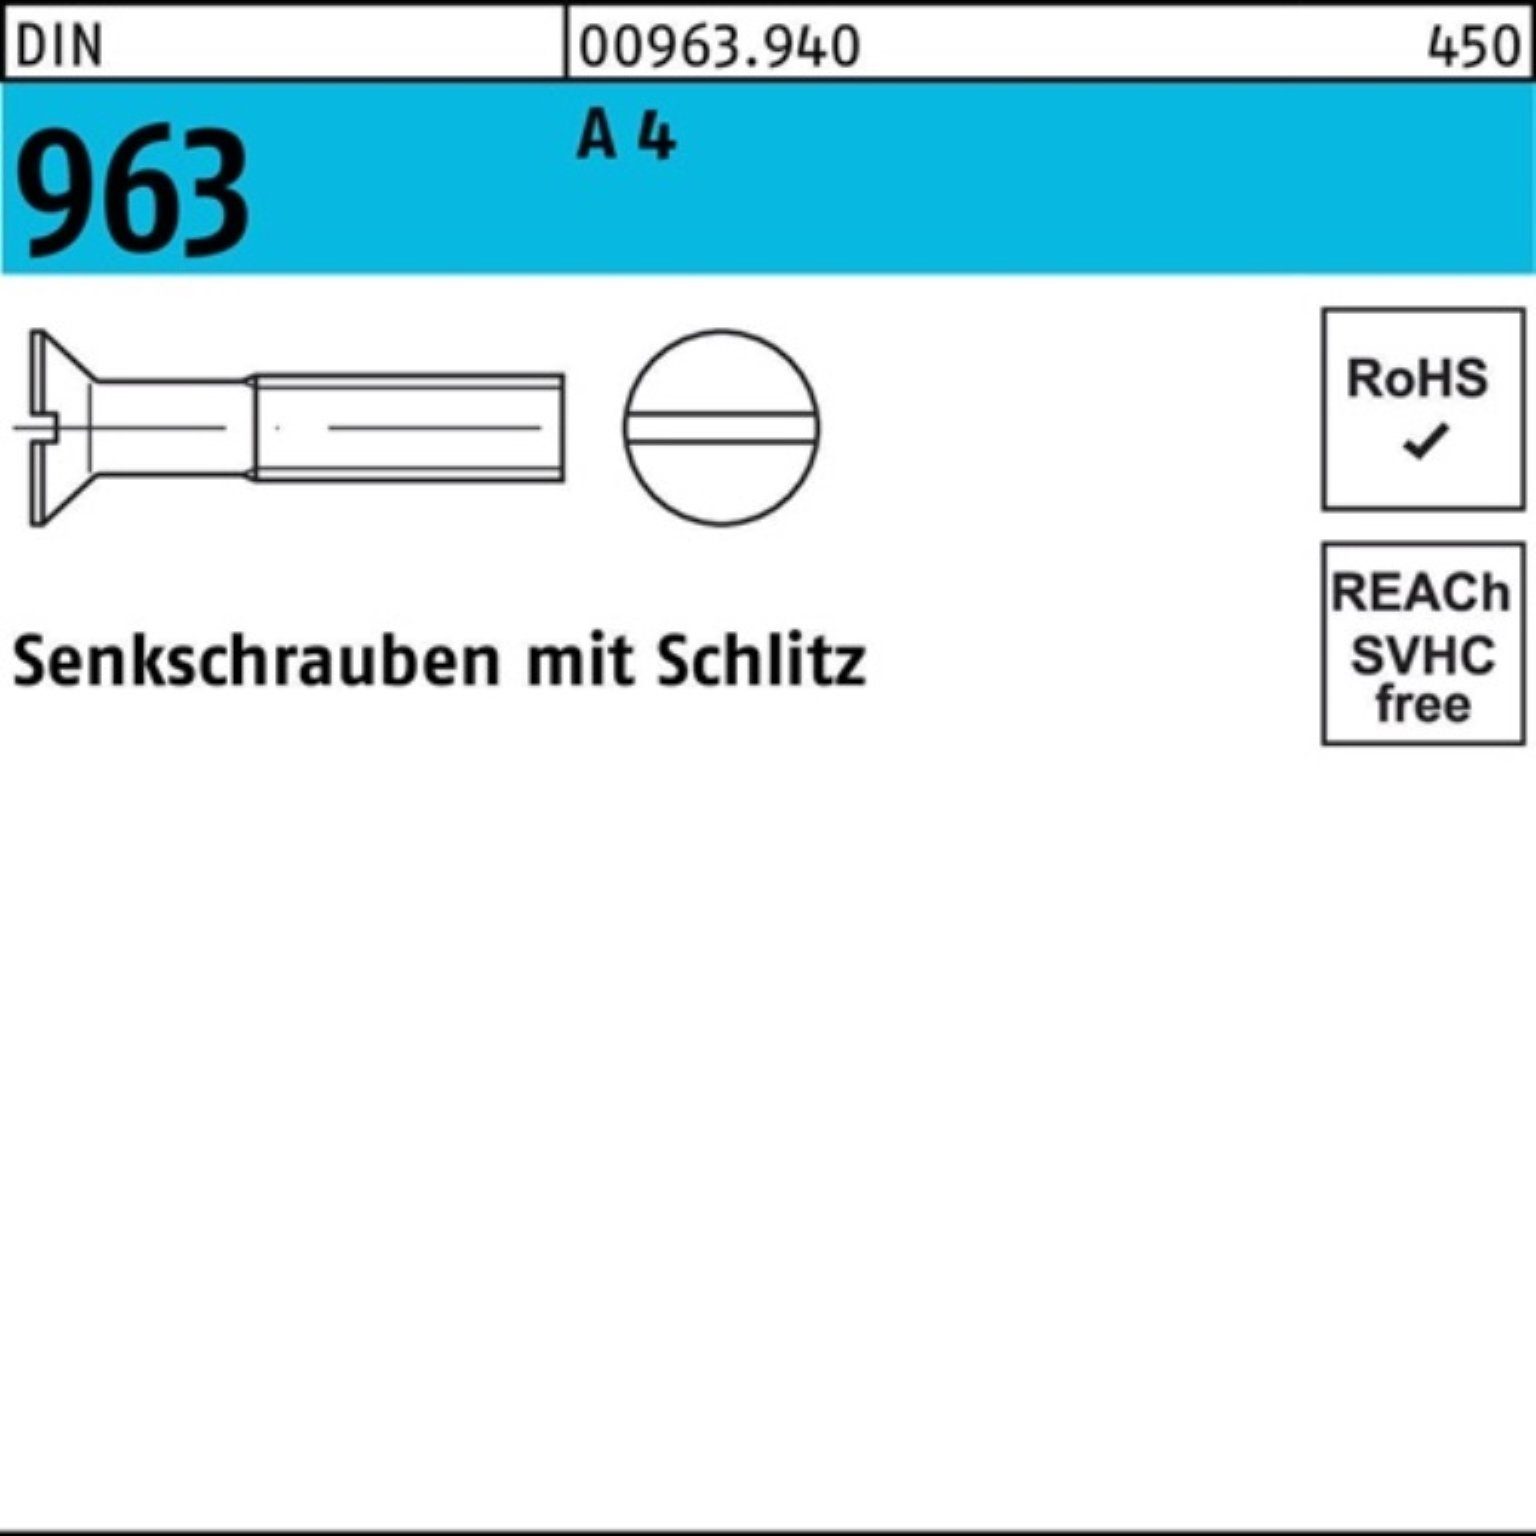 Reyher Senkschraube 1000er Pack Schlitz 1000 Stück 963 DIN DIN 20 96 A M3x Senkschraube 4